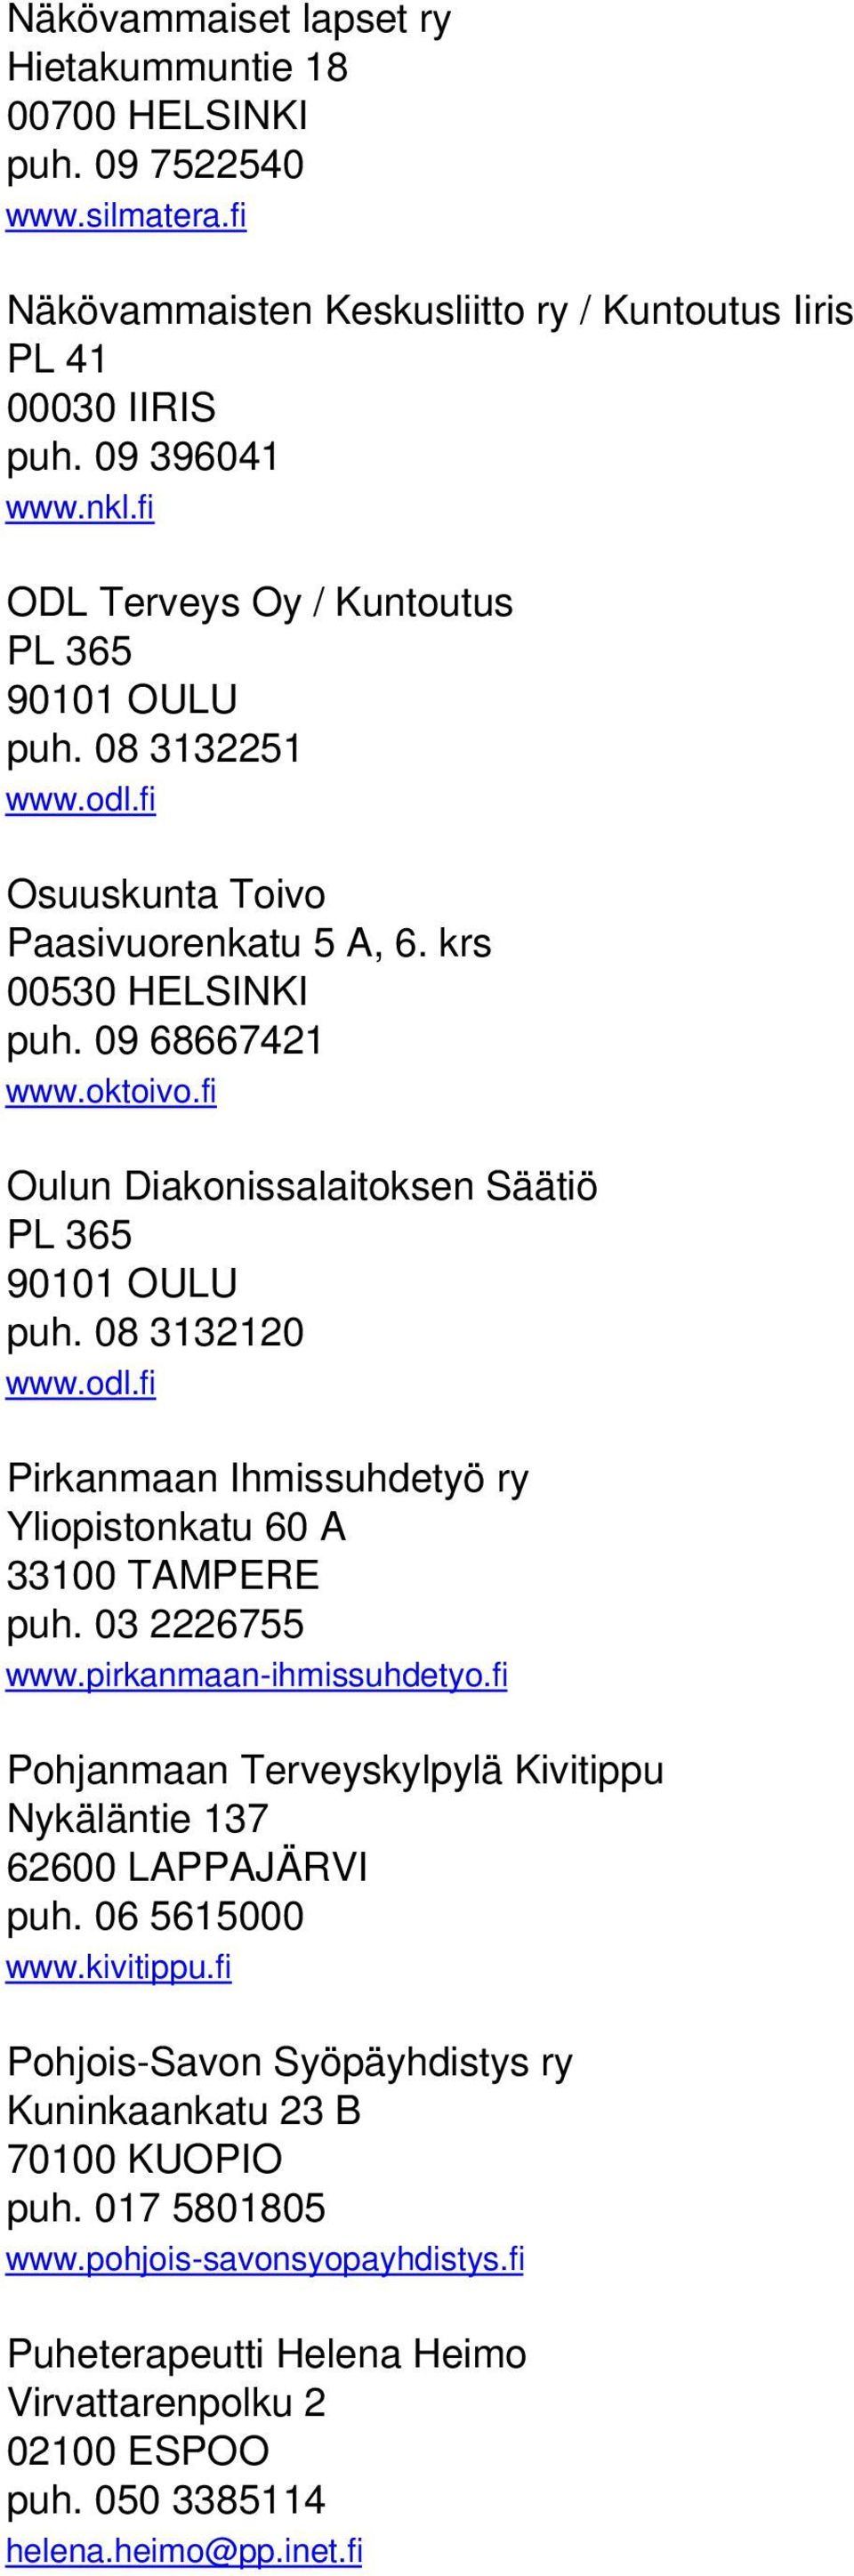 fi Oulun Diakonissalaitoksen Säätiö PL 365 90101 OULU puh. 08 3132120 www.odl.fi Pirkanmaan Ihmissuhdetyö ry Yliopistonkatu 60 A 33100 TAMPERE puh. 03 2226755 www.pirkanmaan-ihmissuhdetyo.